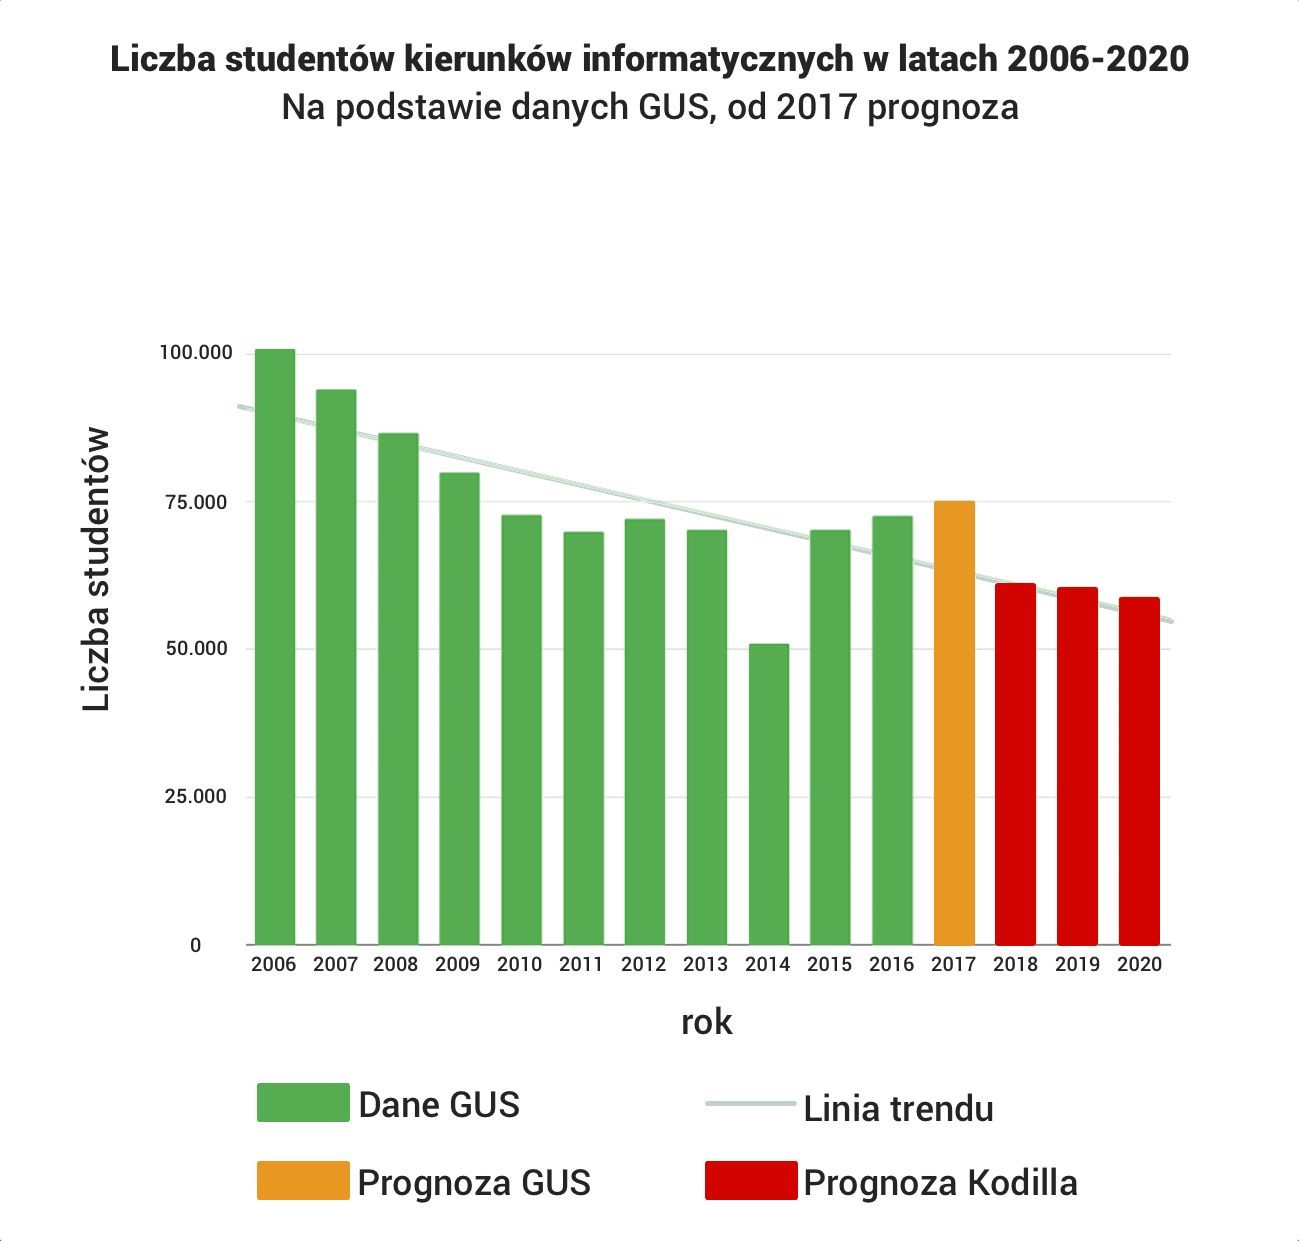 Będzie coraz mniej absolwentów informatyki - prognoza do 2020 roku